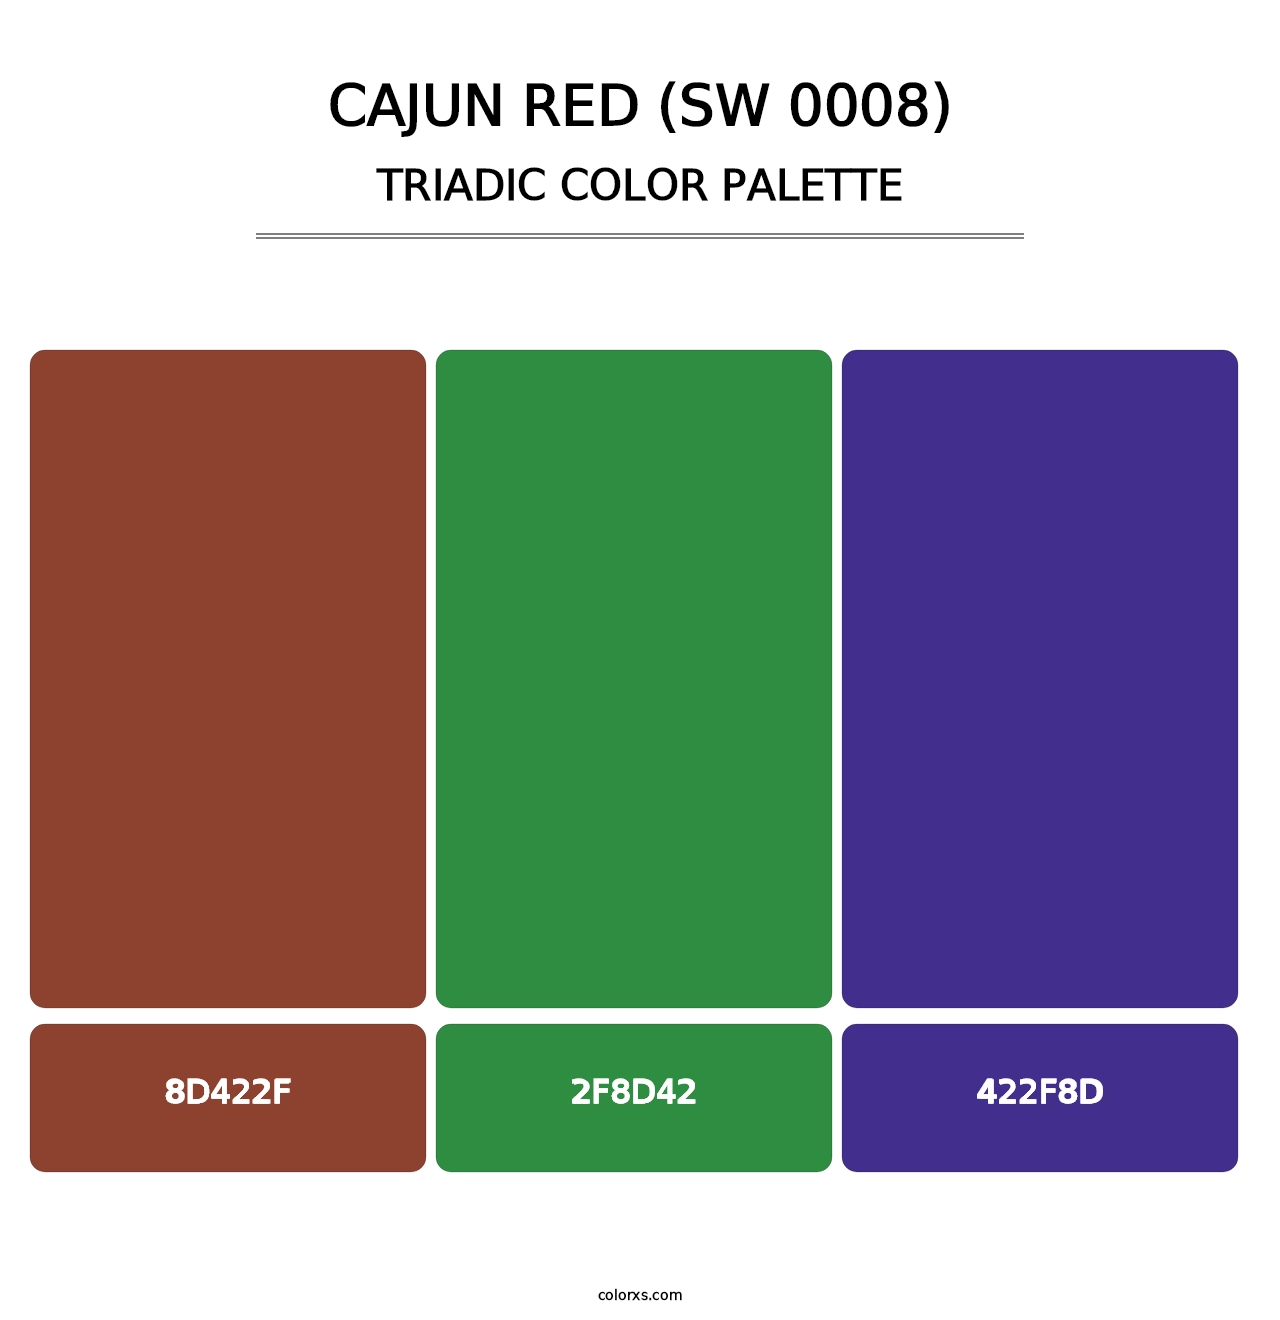 Cajun Red (SW 0008) - Triadic Color Palette